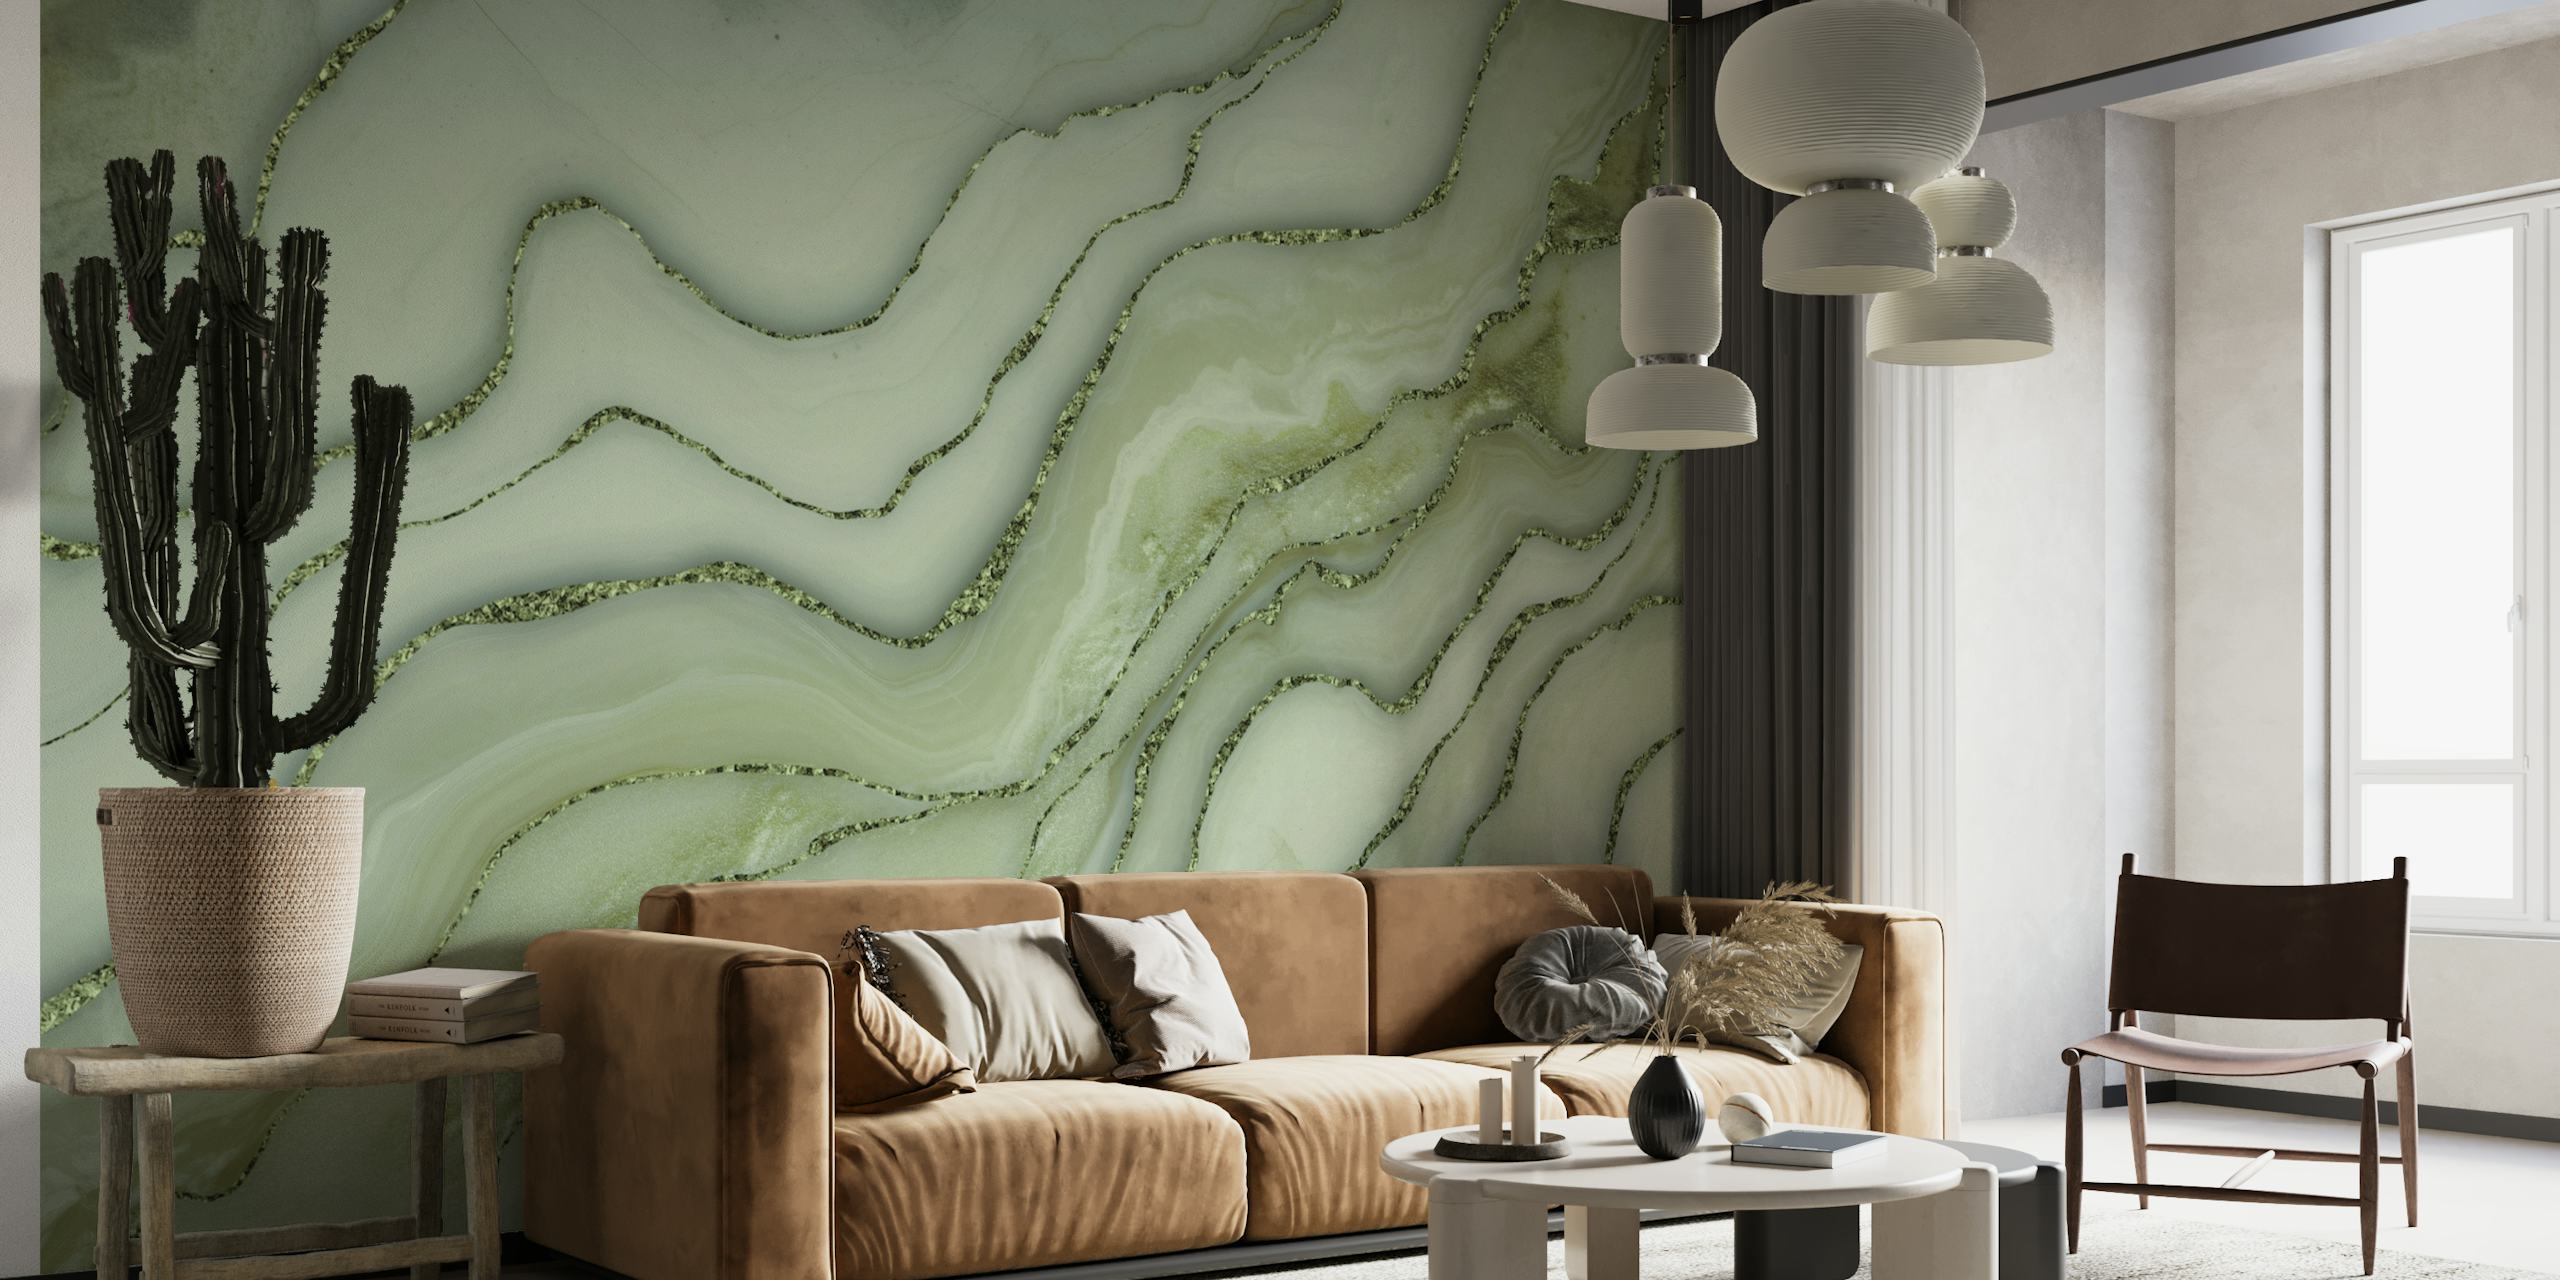 Jadenvihreä marmorinen seinämaalaus kultaisilla aksenteilla